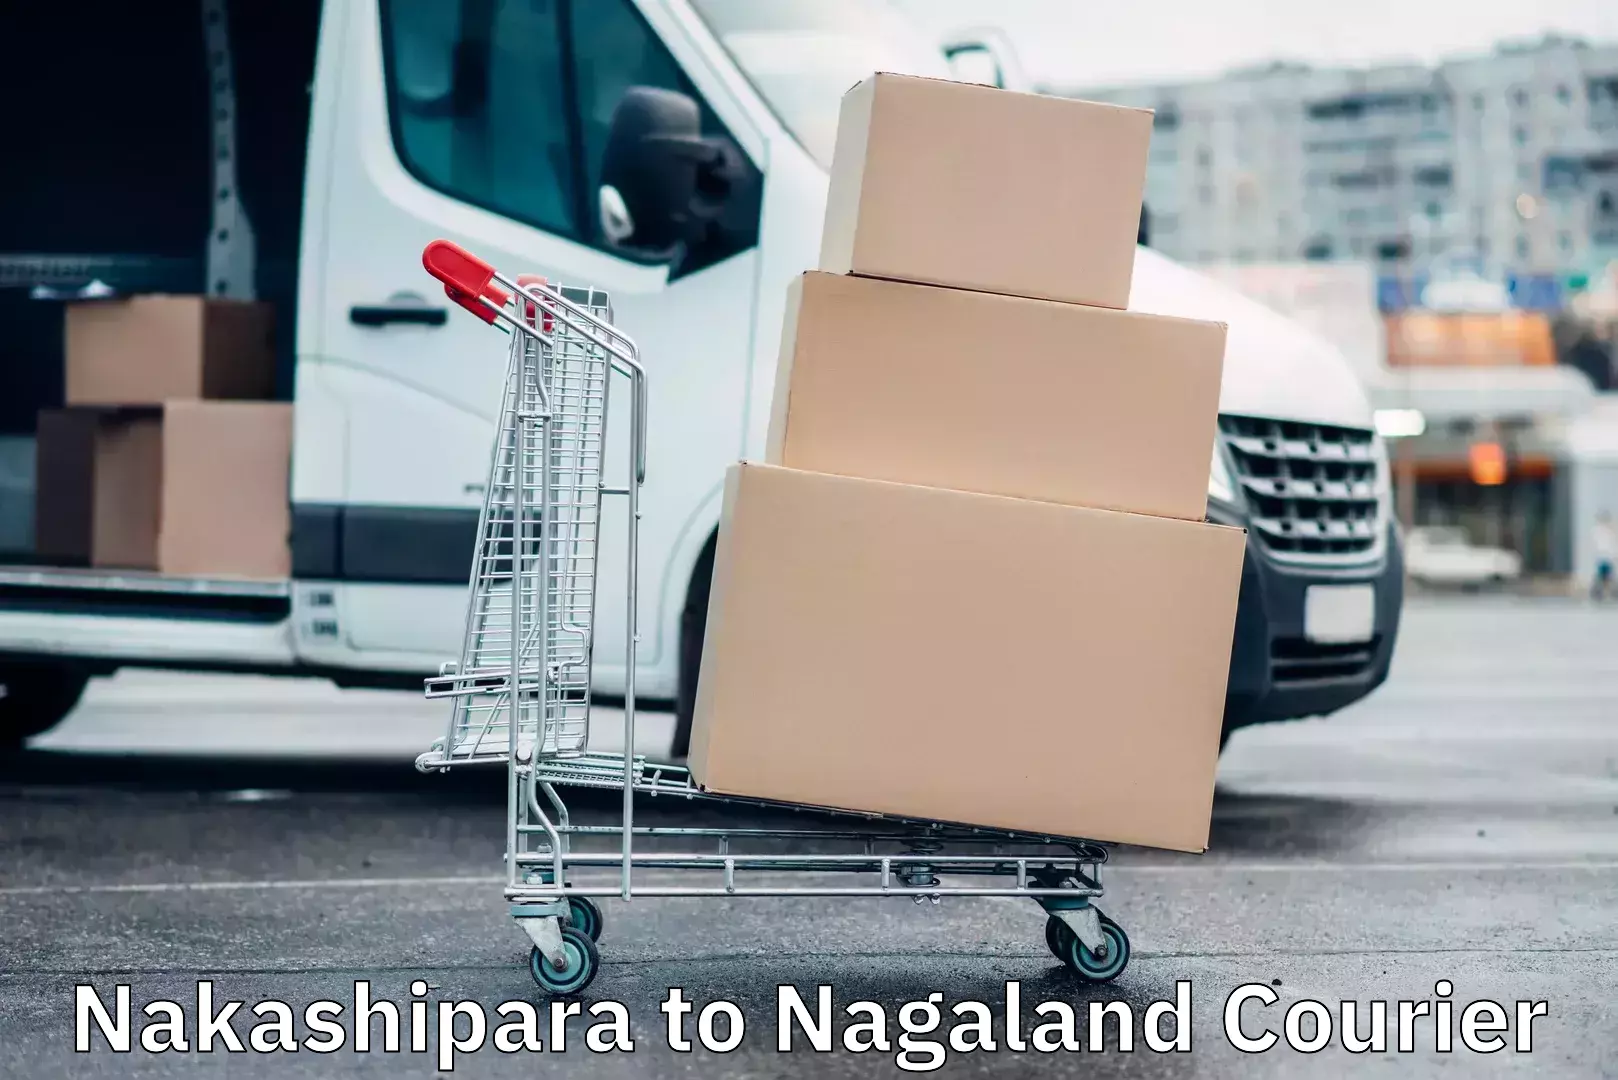 High-capacity parcel service Nakashipara to Nagaland